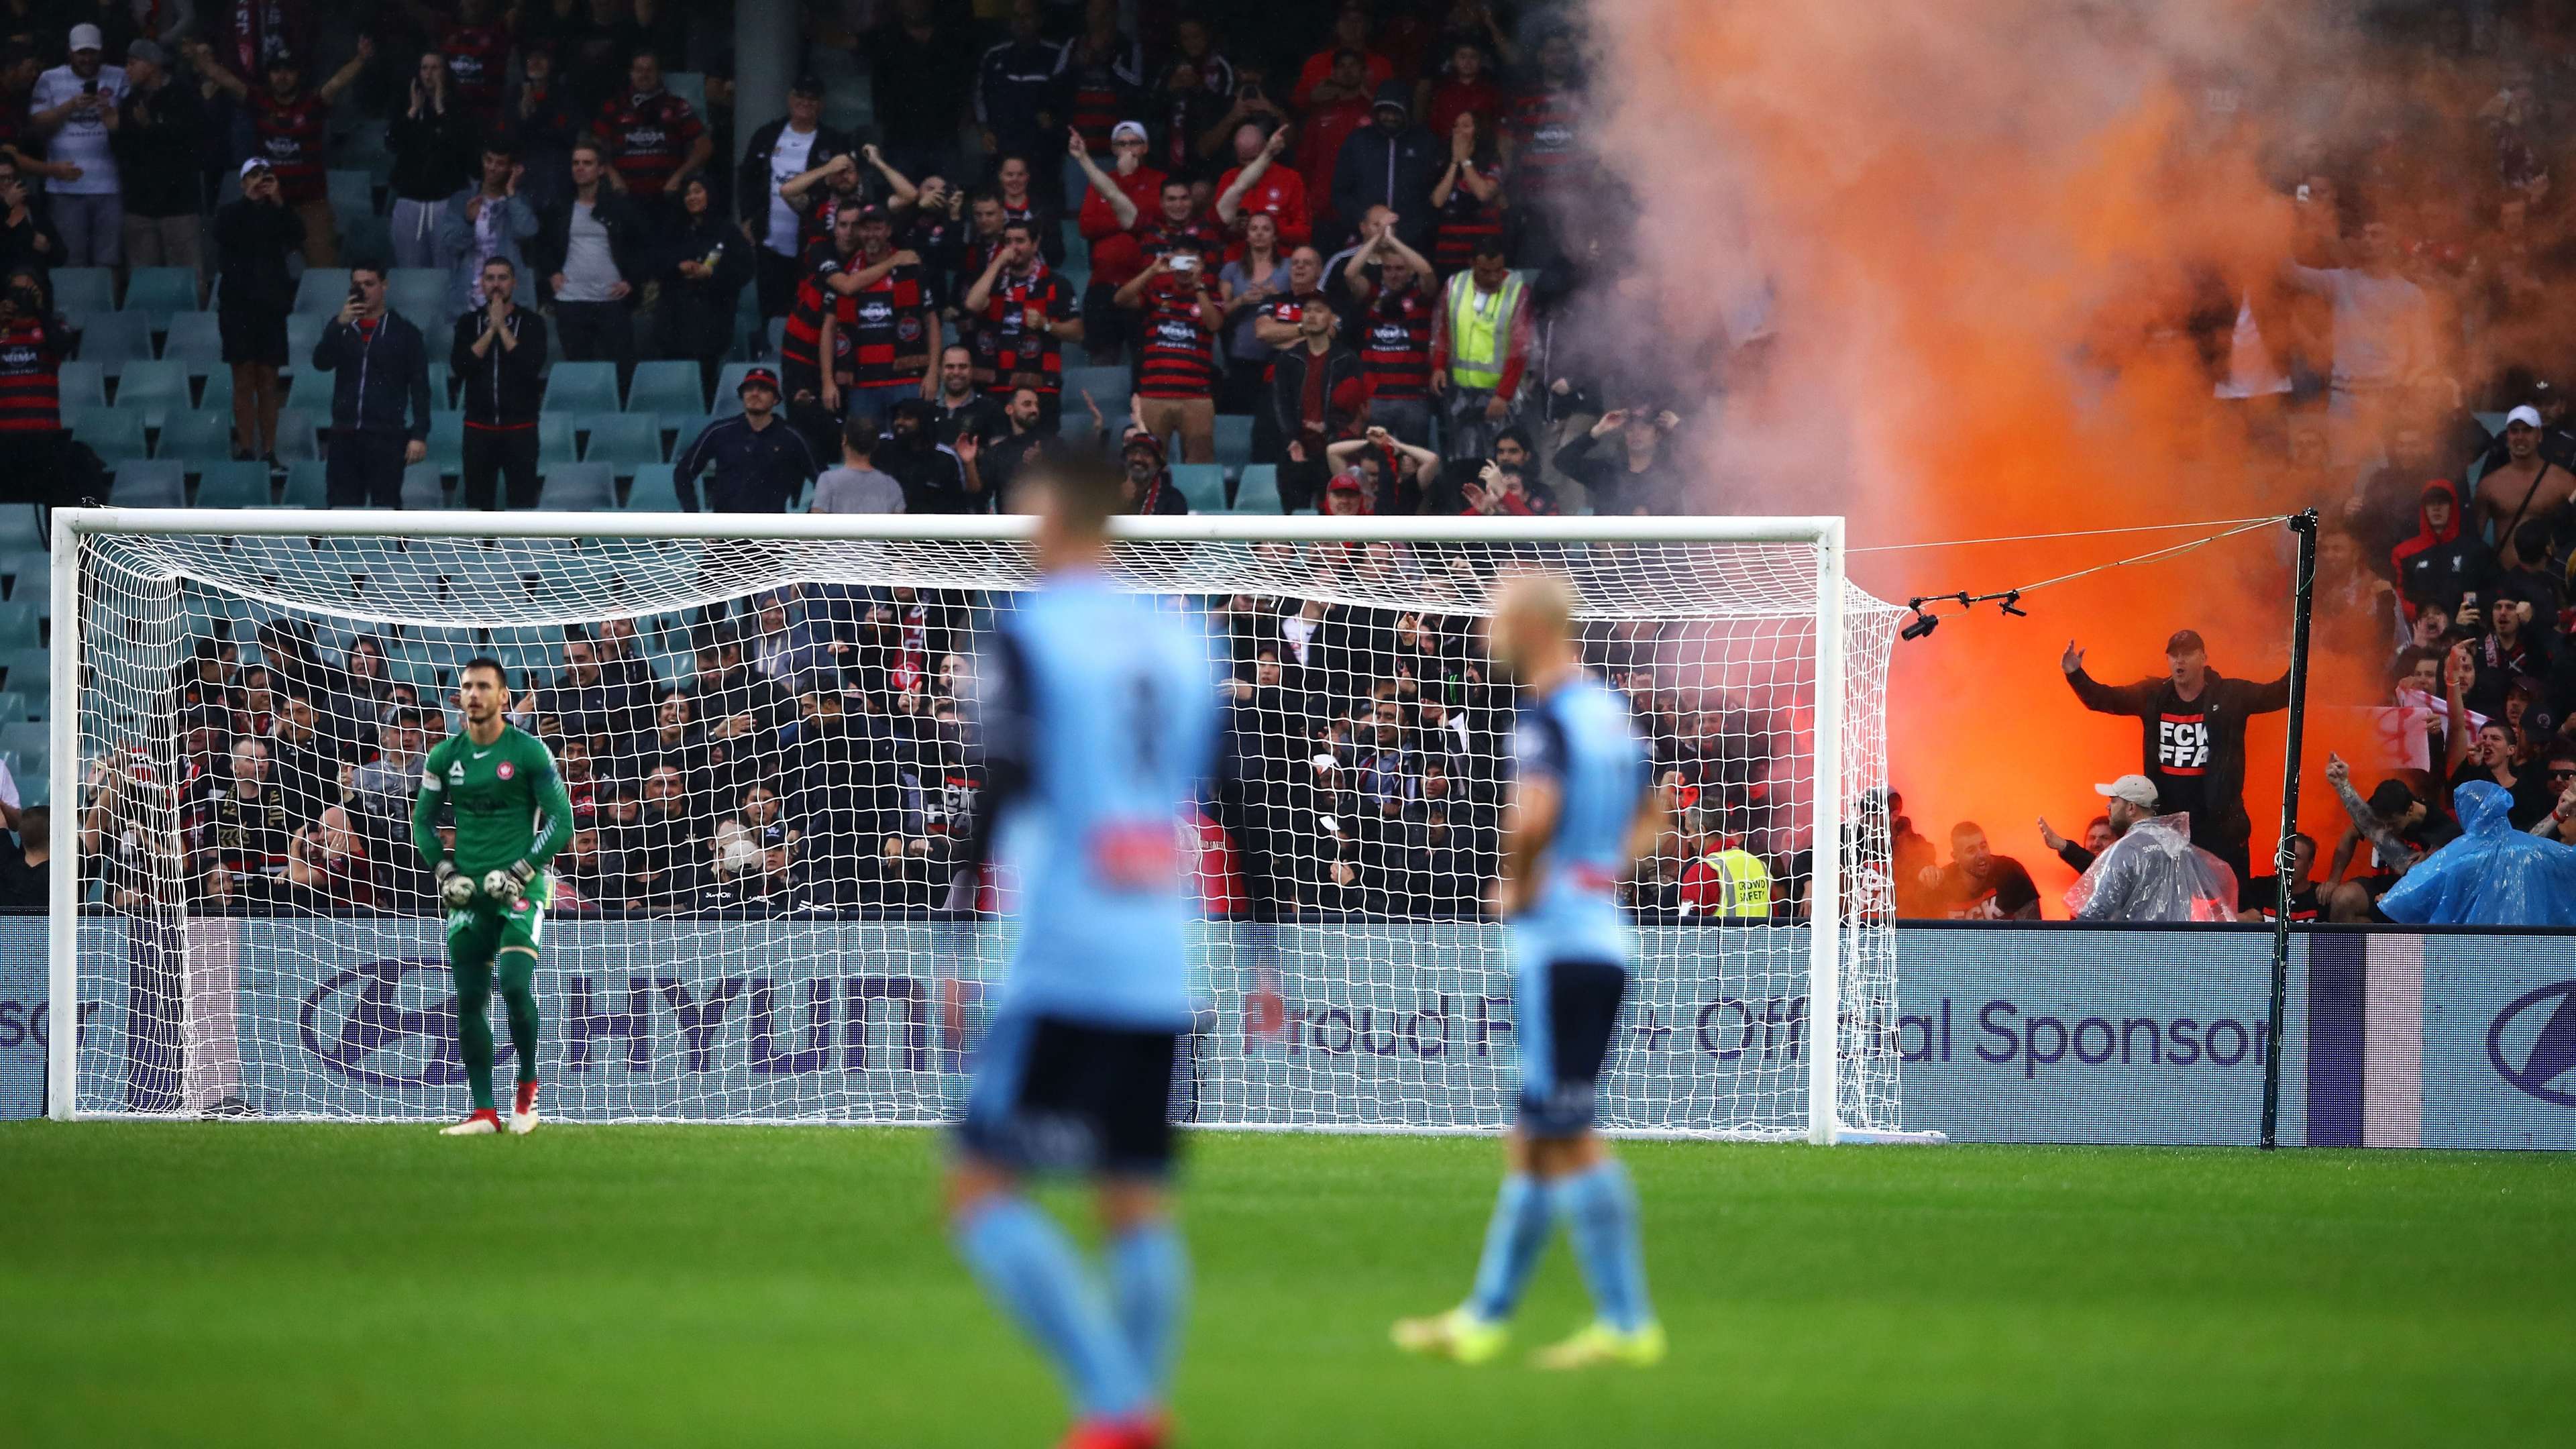 Sydney derby flares